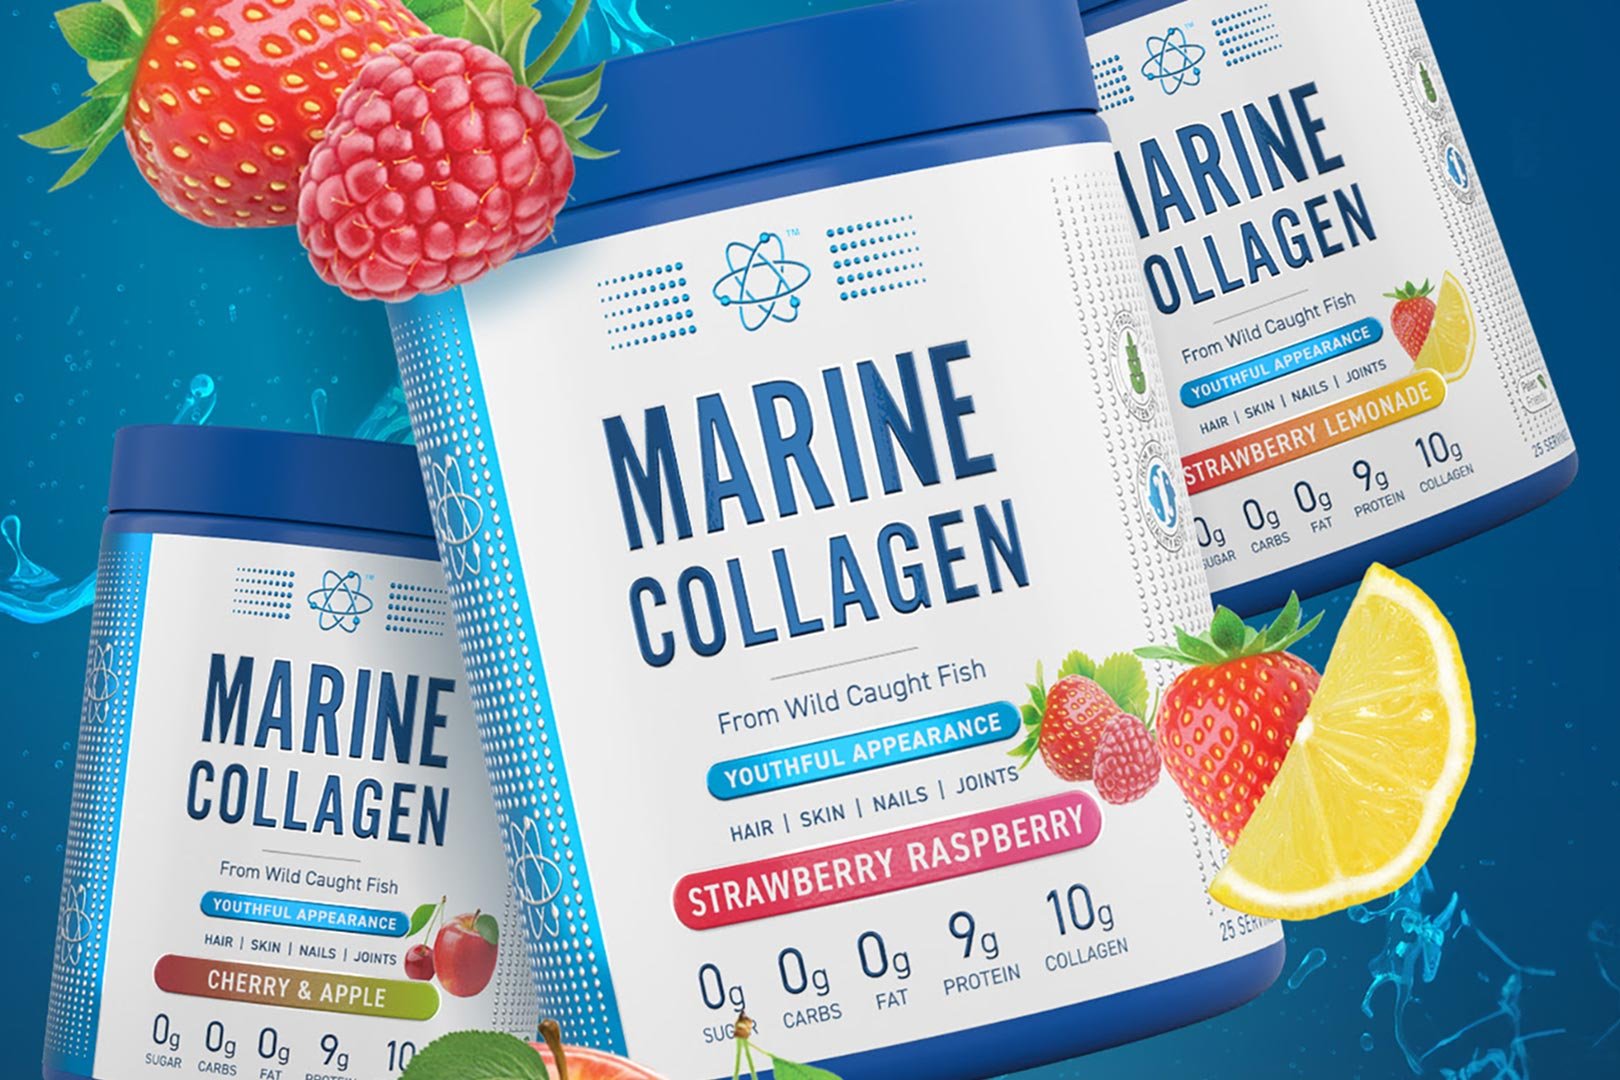 Applied Nutrition Marine Collagen